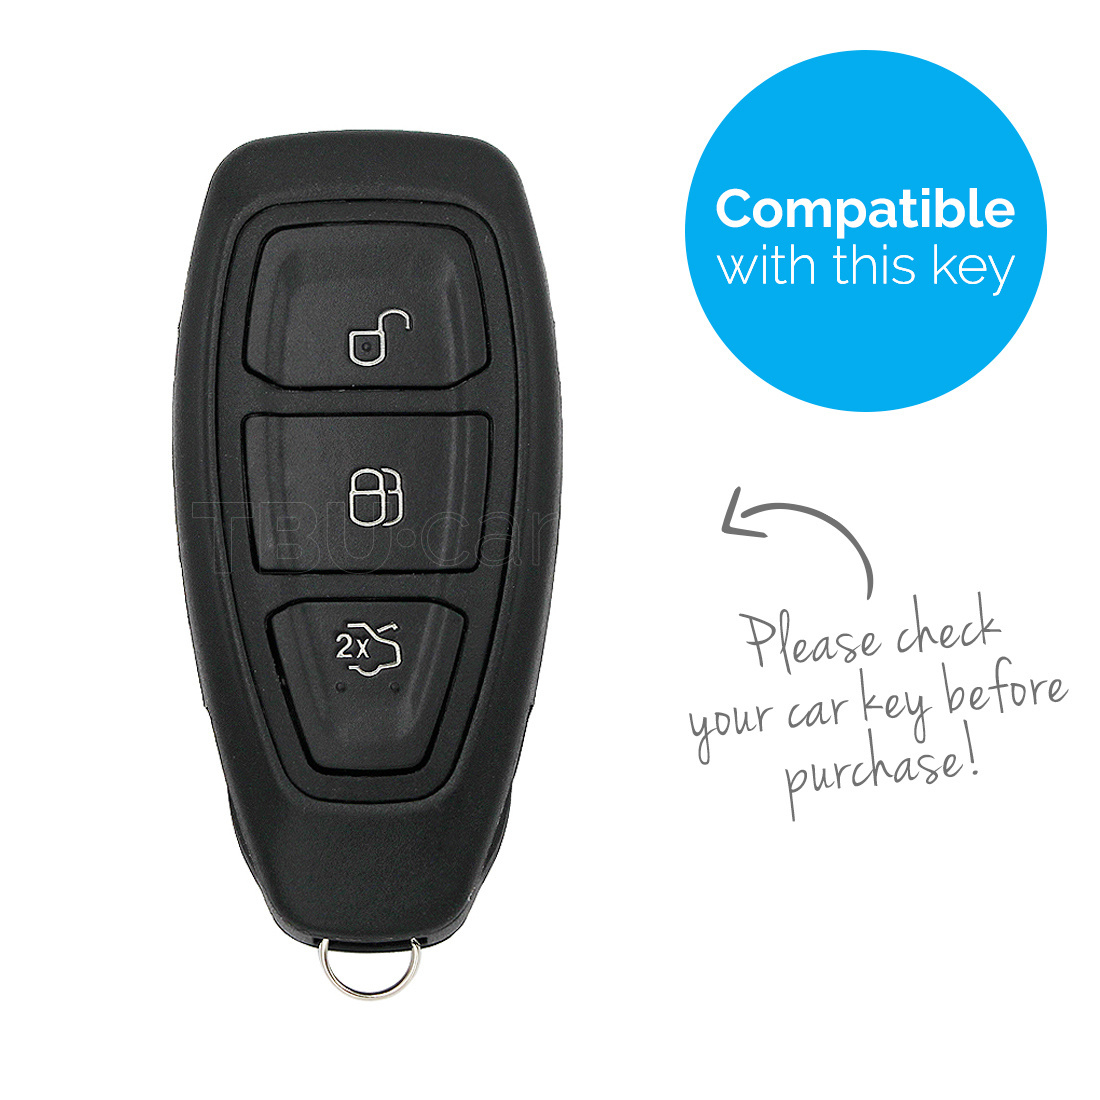 TBU car Autoschlüssel Hülle kompatibel mit Ford 3 Tasten (Keyless Entry) -  Schutzhülle aus TPU - Auto Schlüsselhülle Cover in Silber Chrom